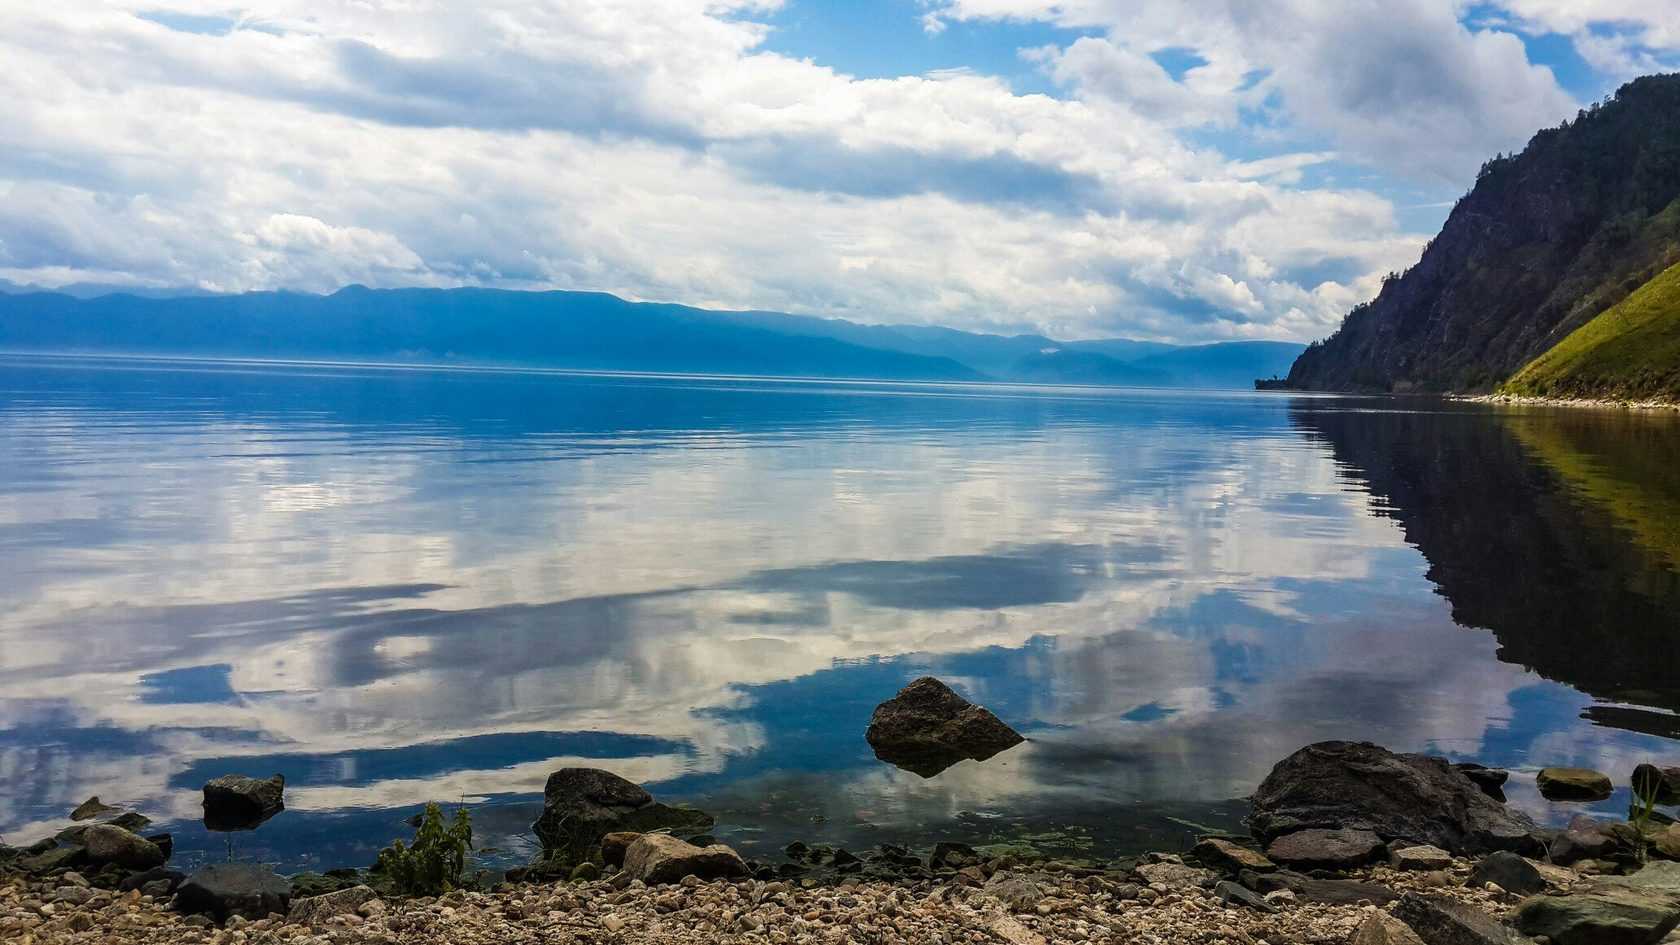 Озеро байкал: общая информация и описание